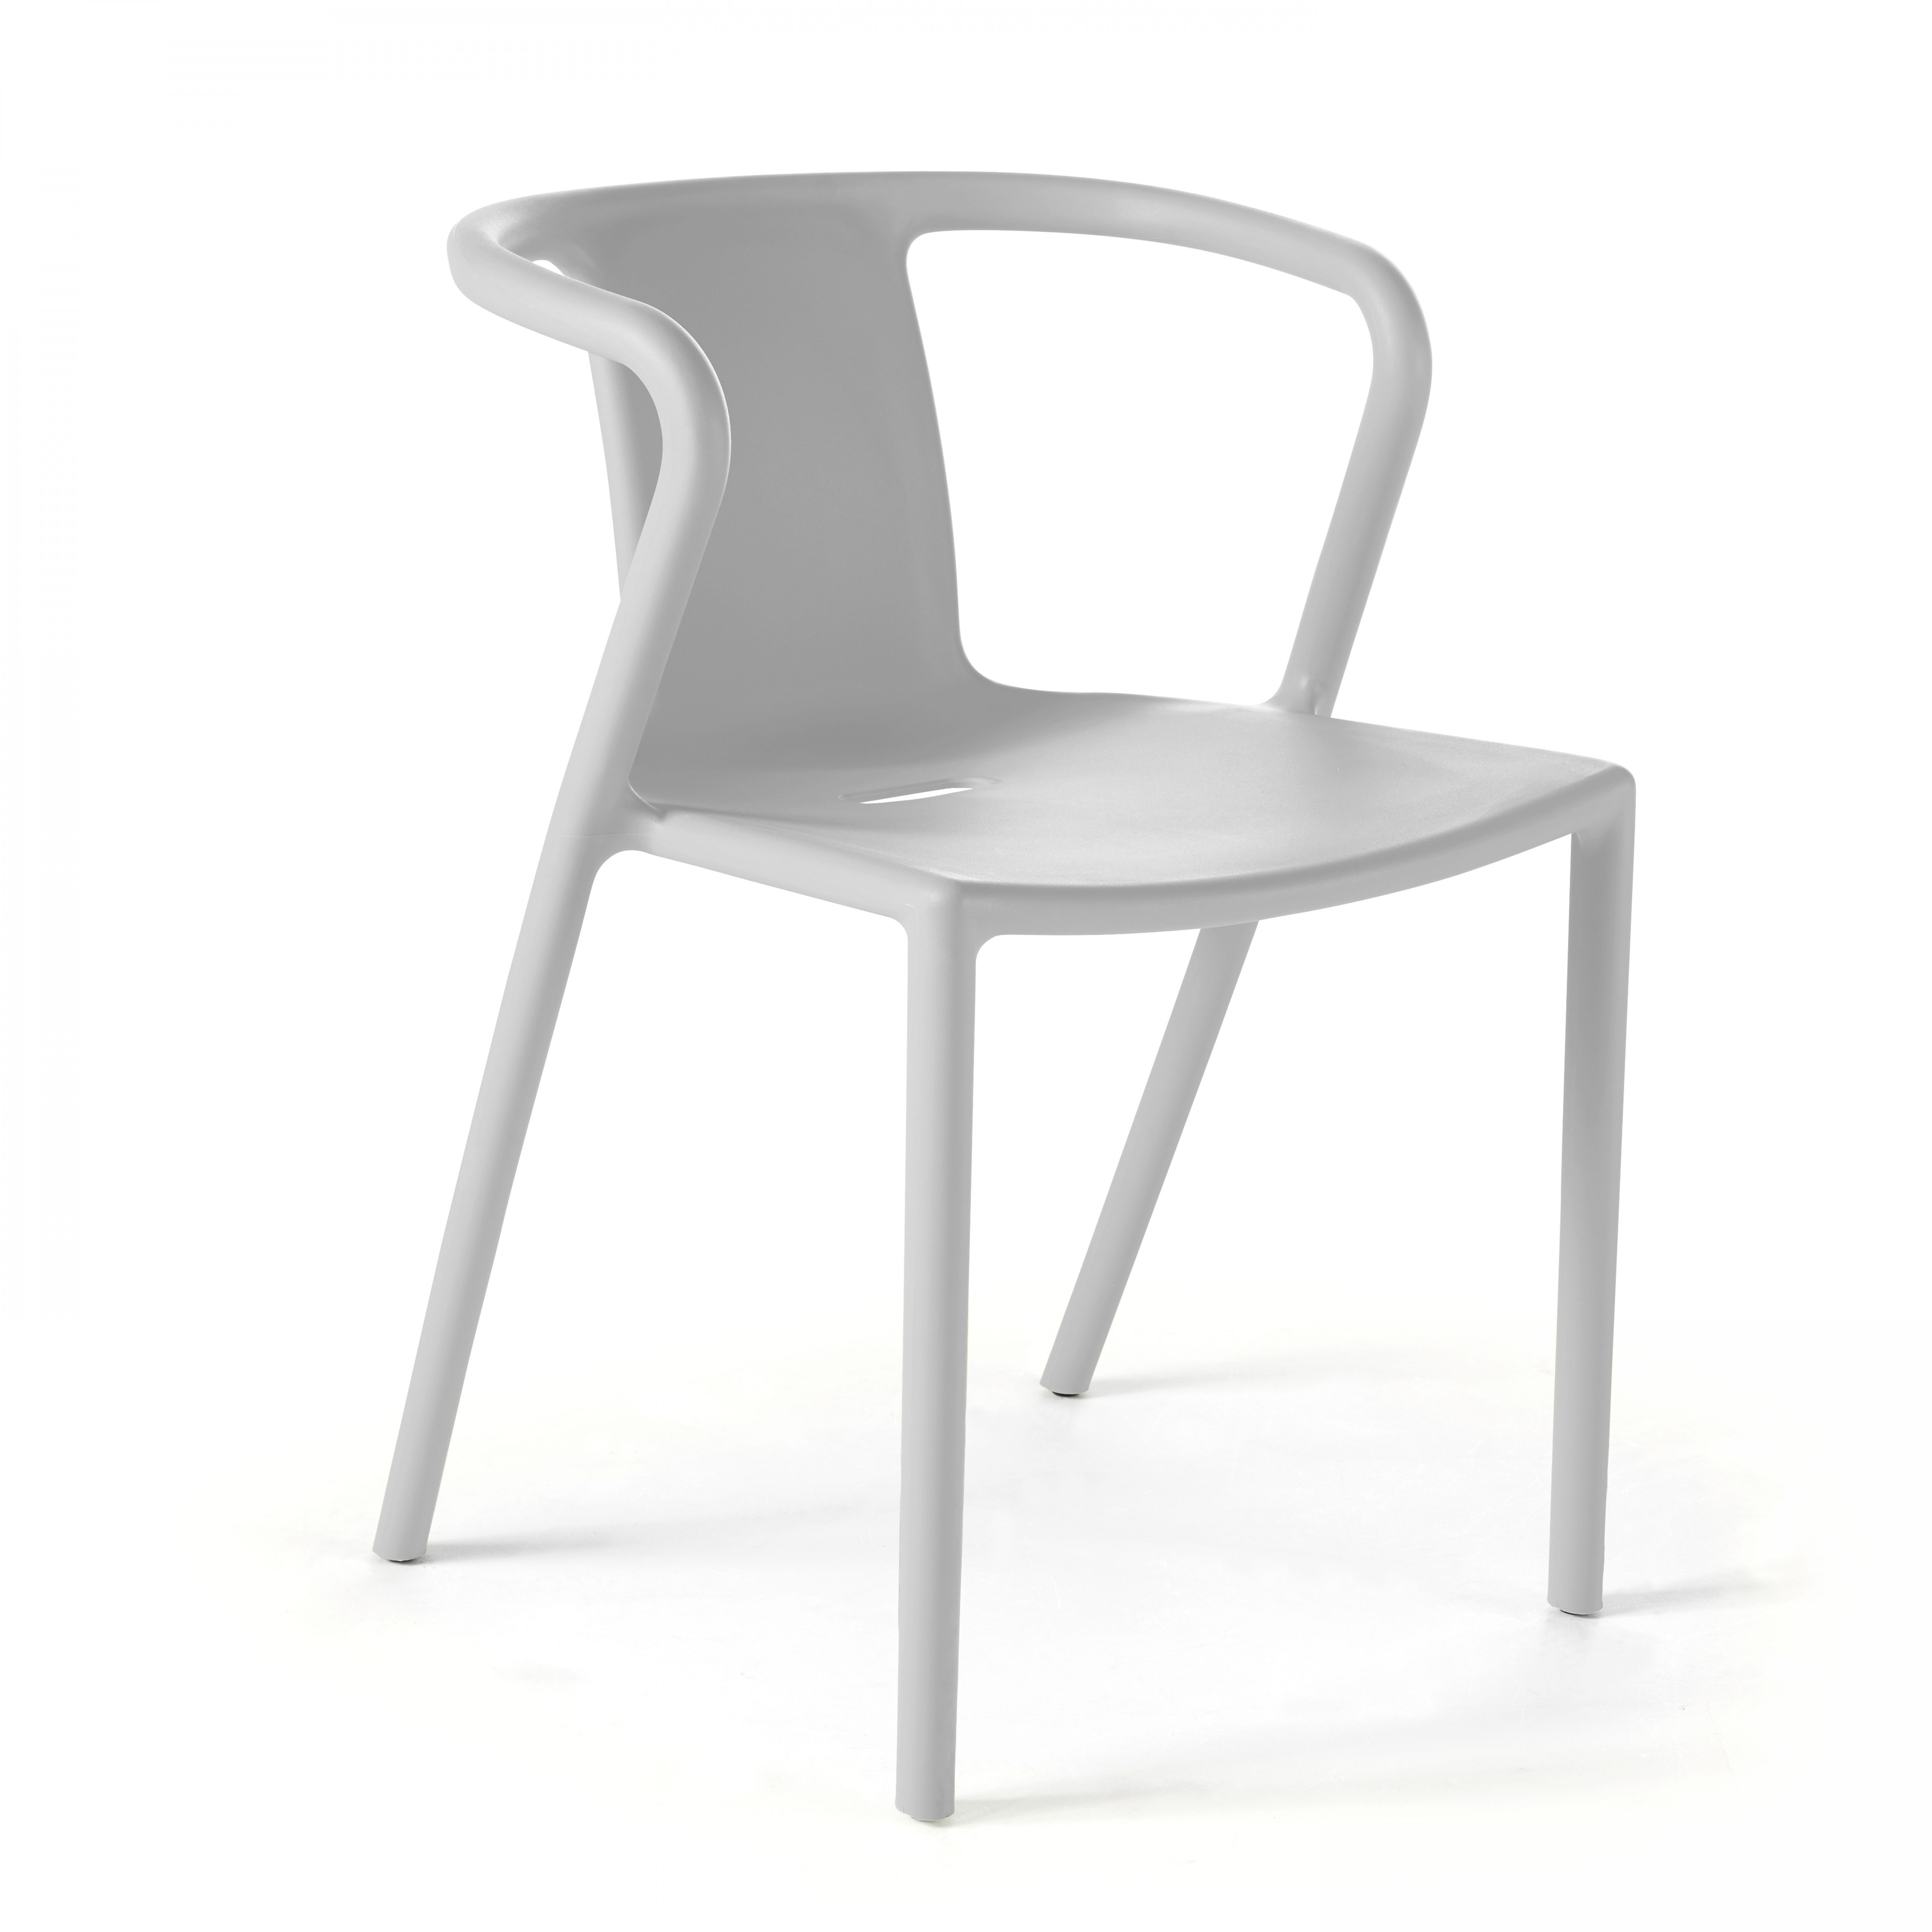 Chaise en plastique avec accoudoirs design